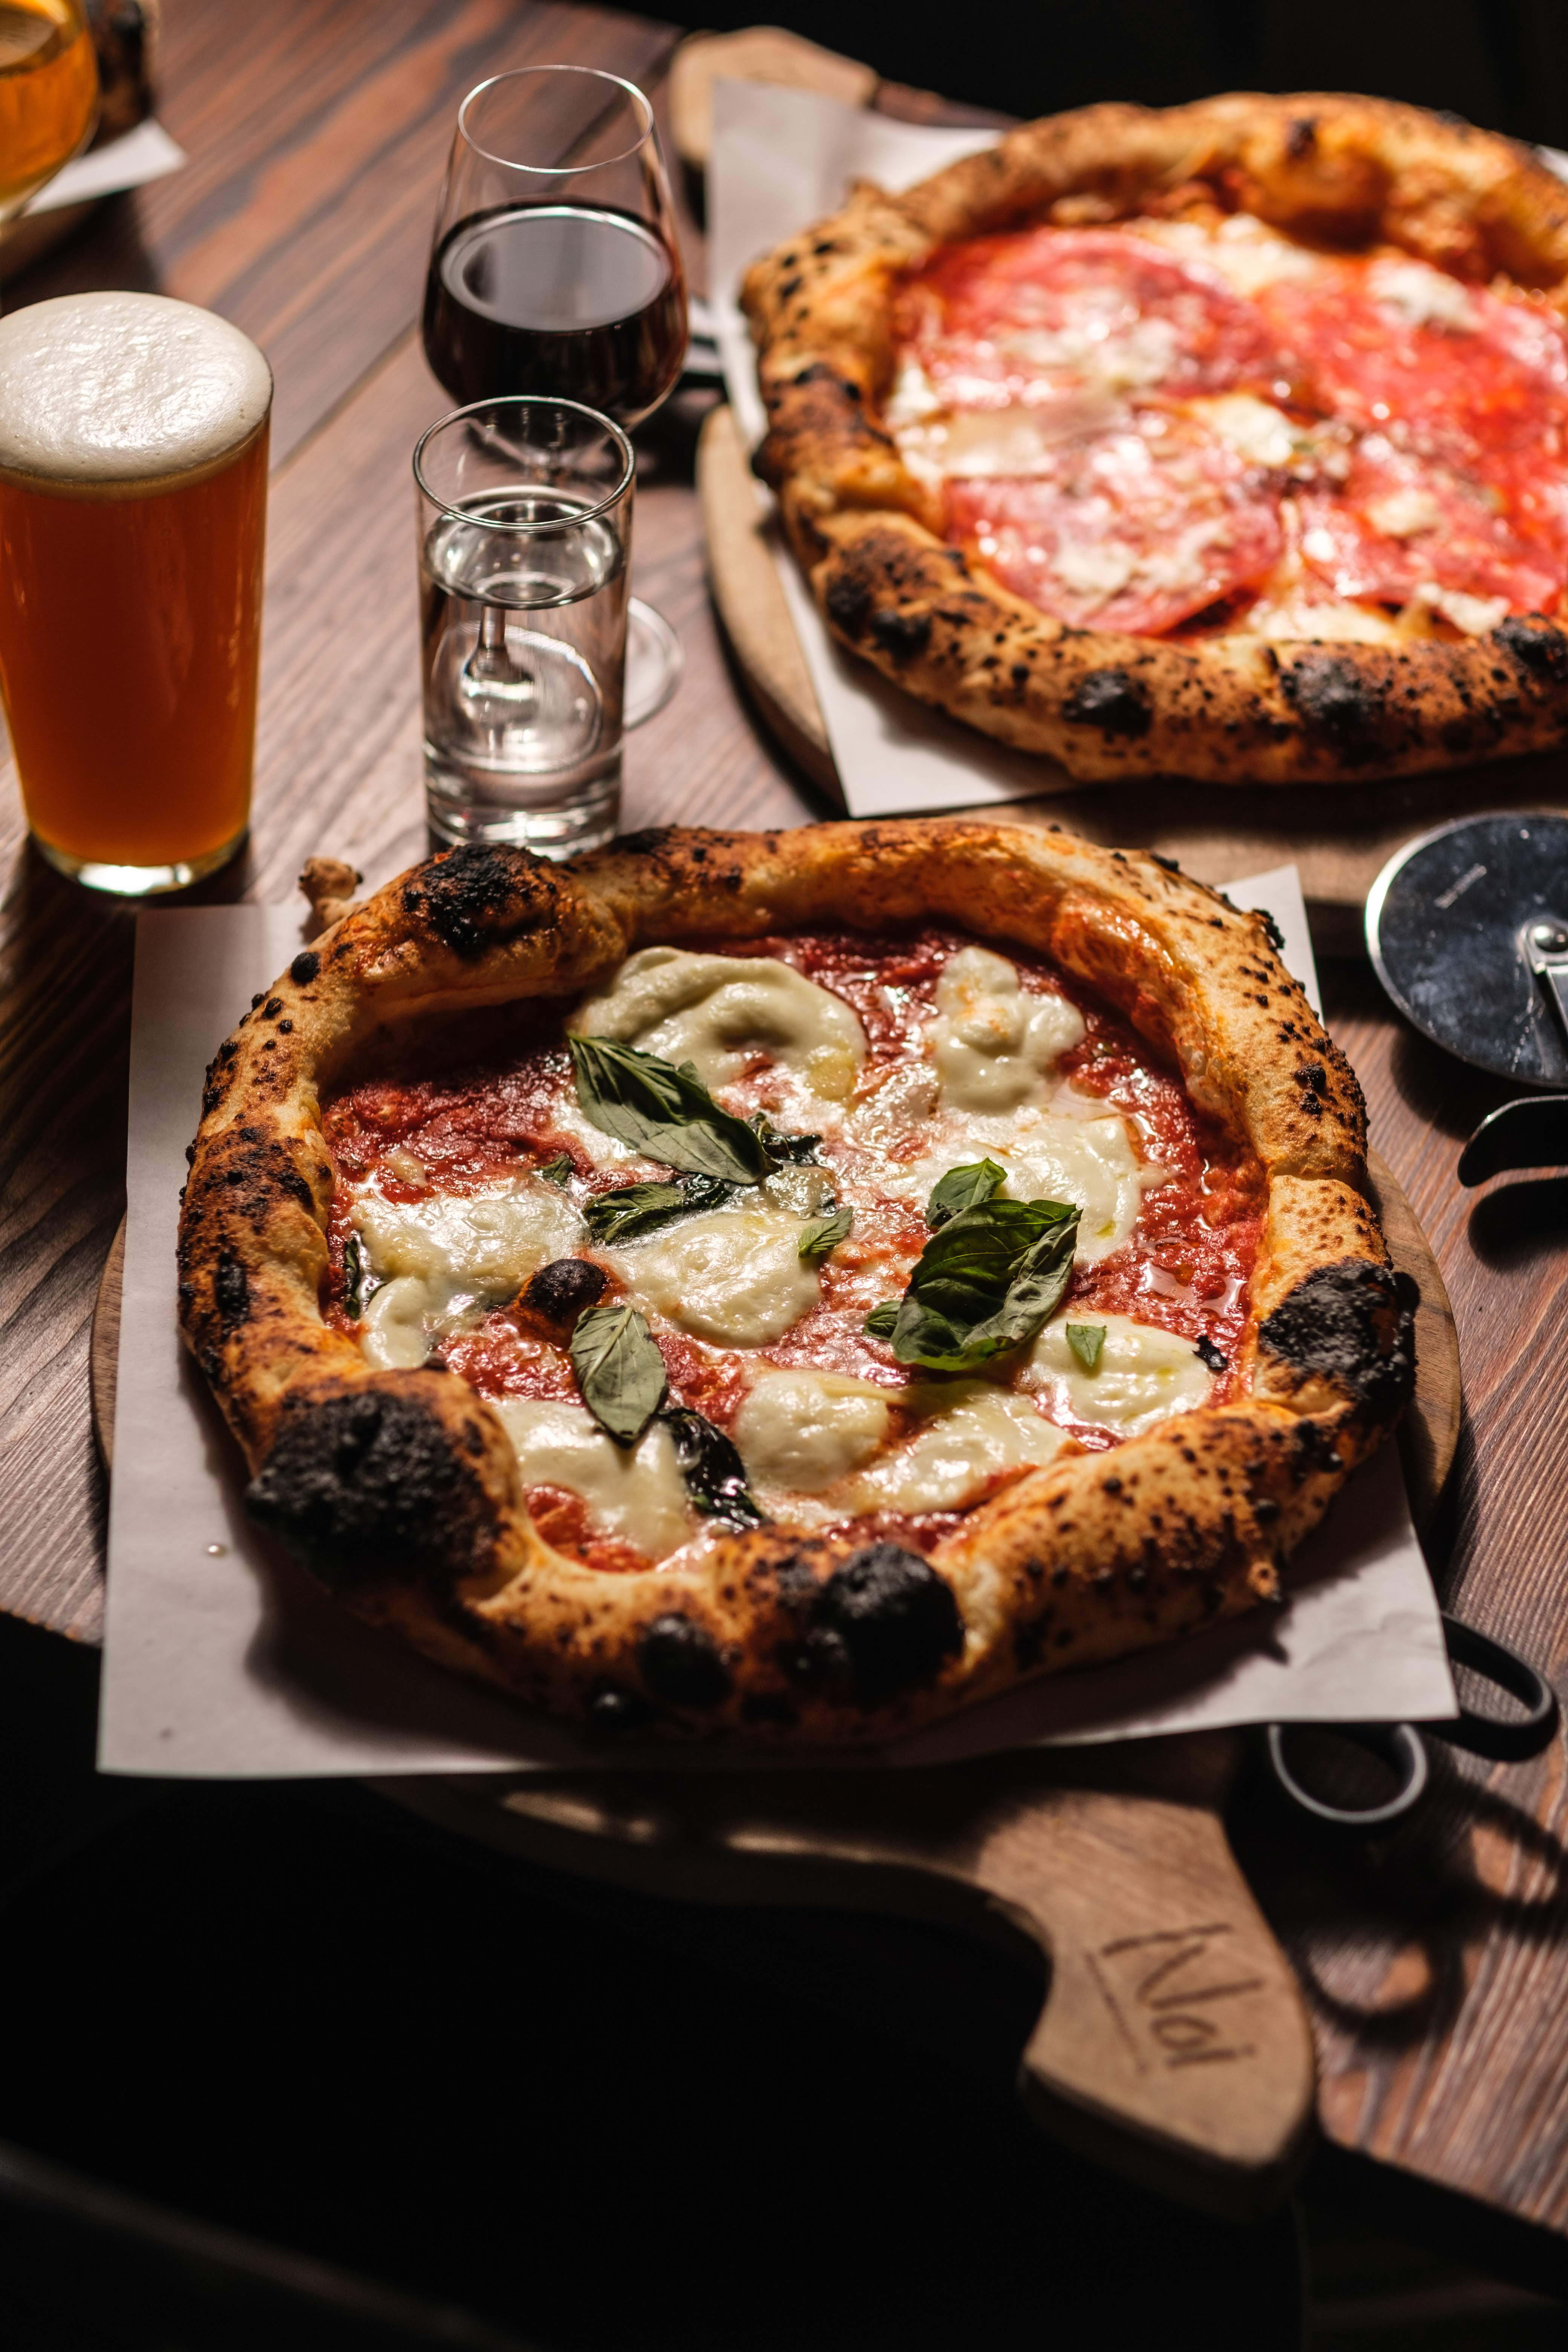 Noi Pizza Saluhallen – Hetaste restaurangerna just nu